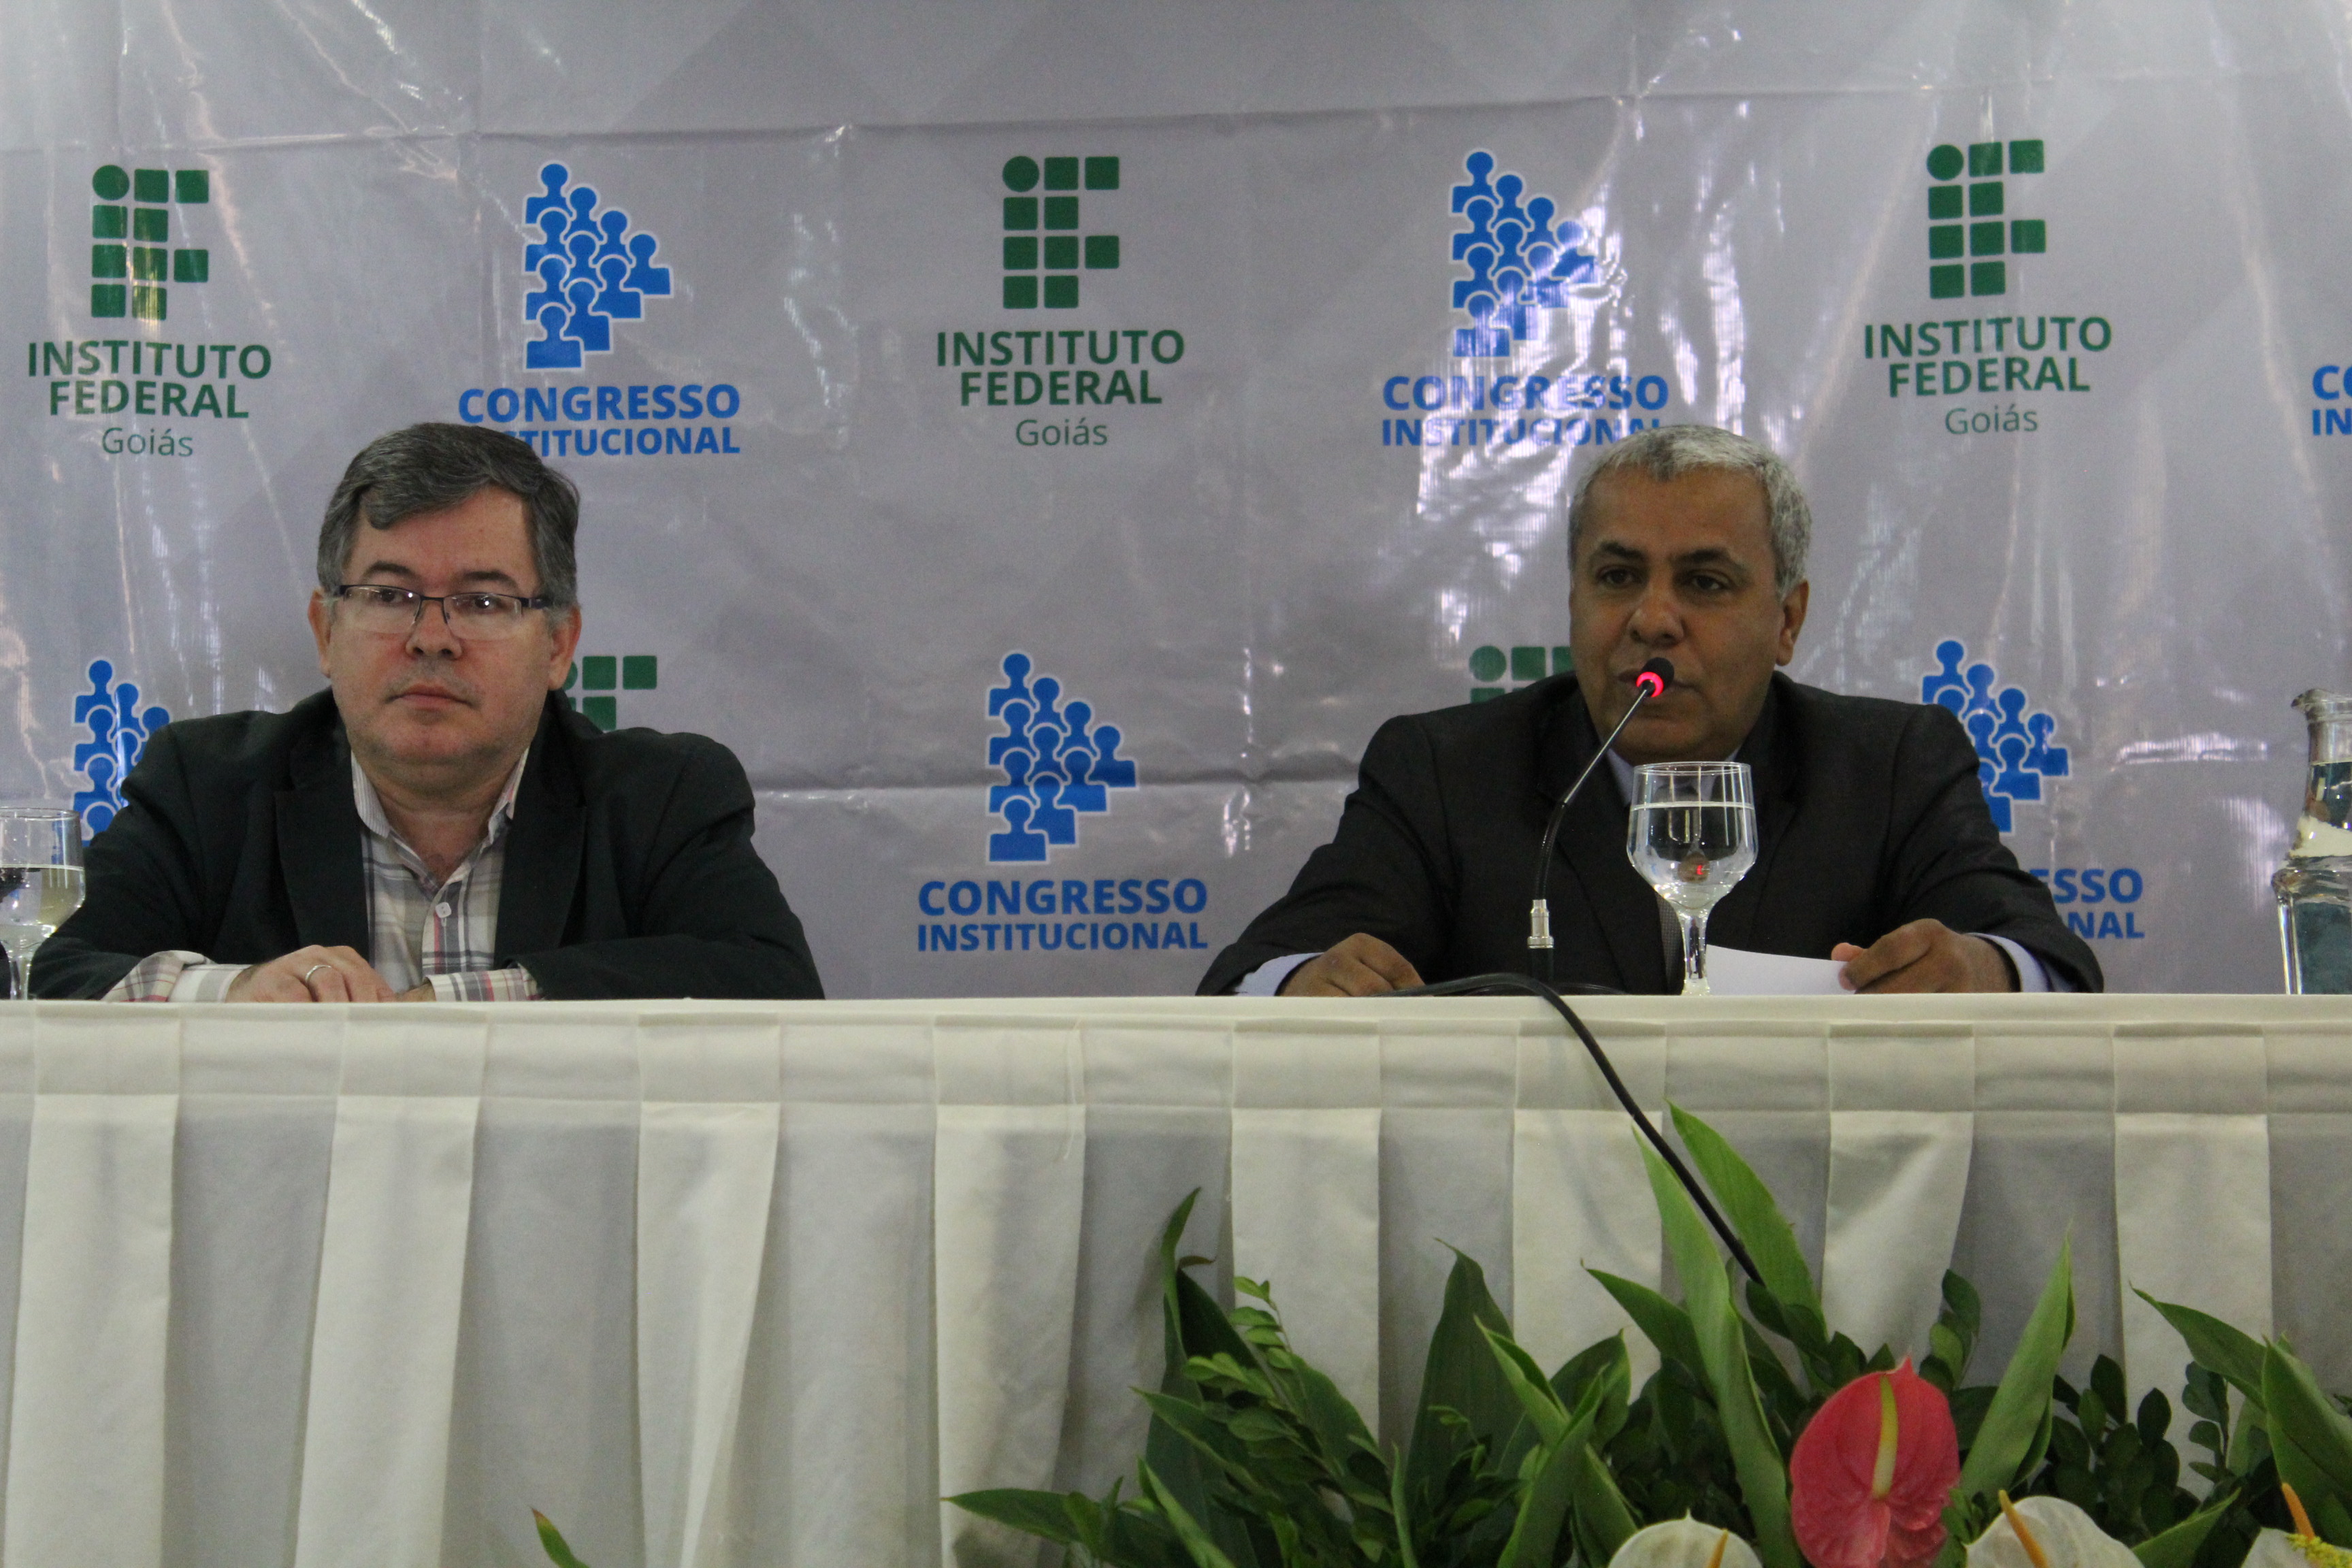 O reitor do IFG fala durante a abertura do Congresso Institucional, ao lado do presidente do Conselho Estadual de Educação